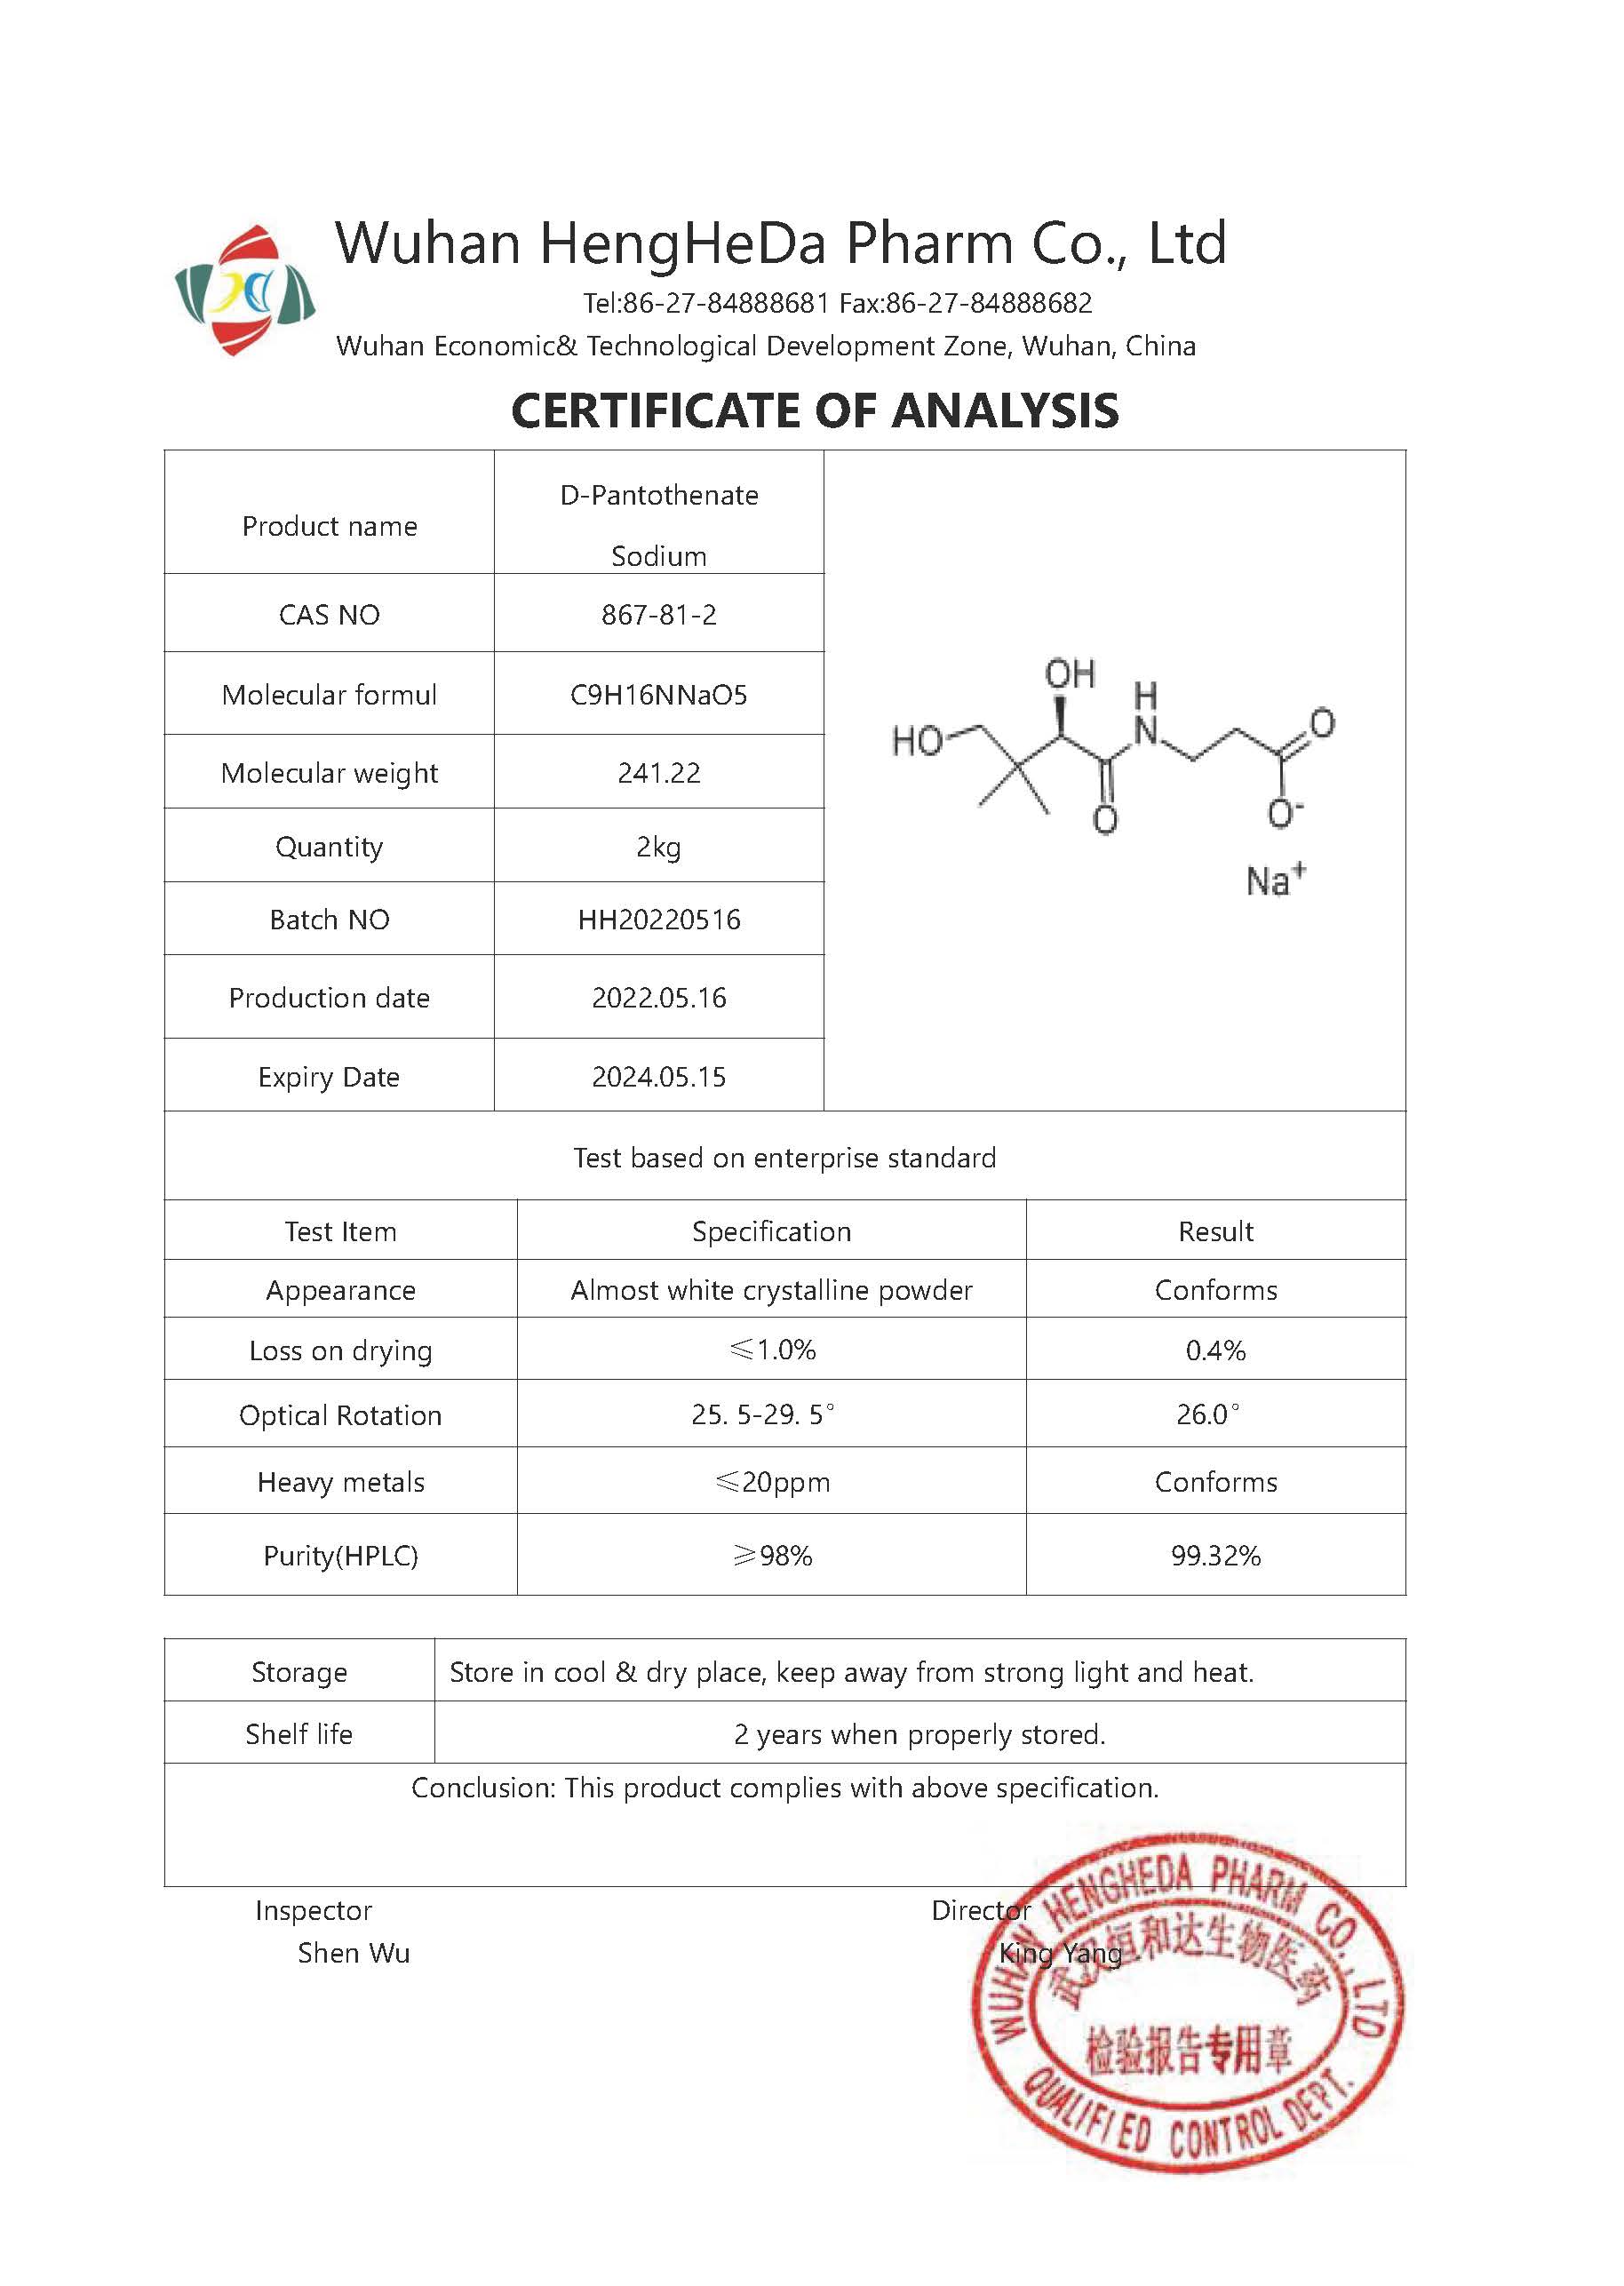 D-Sodium Pantothenate CAS 867-81-2